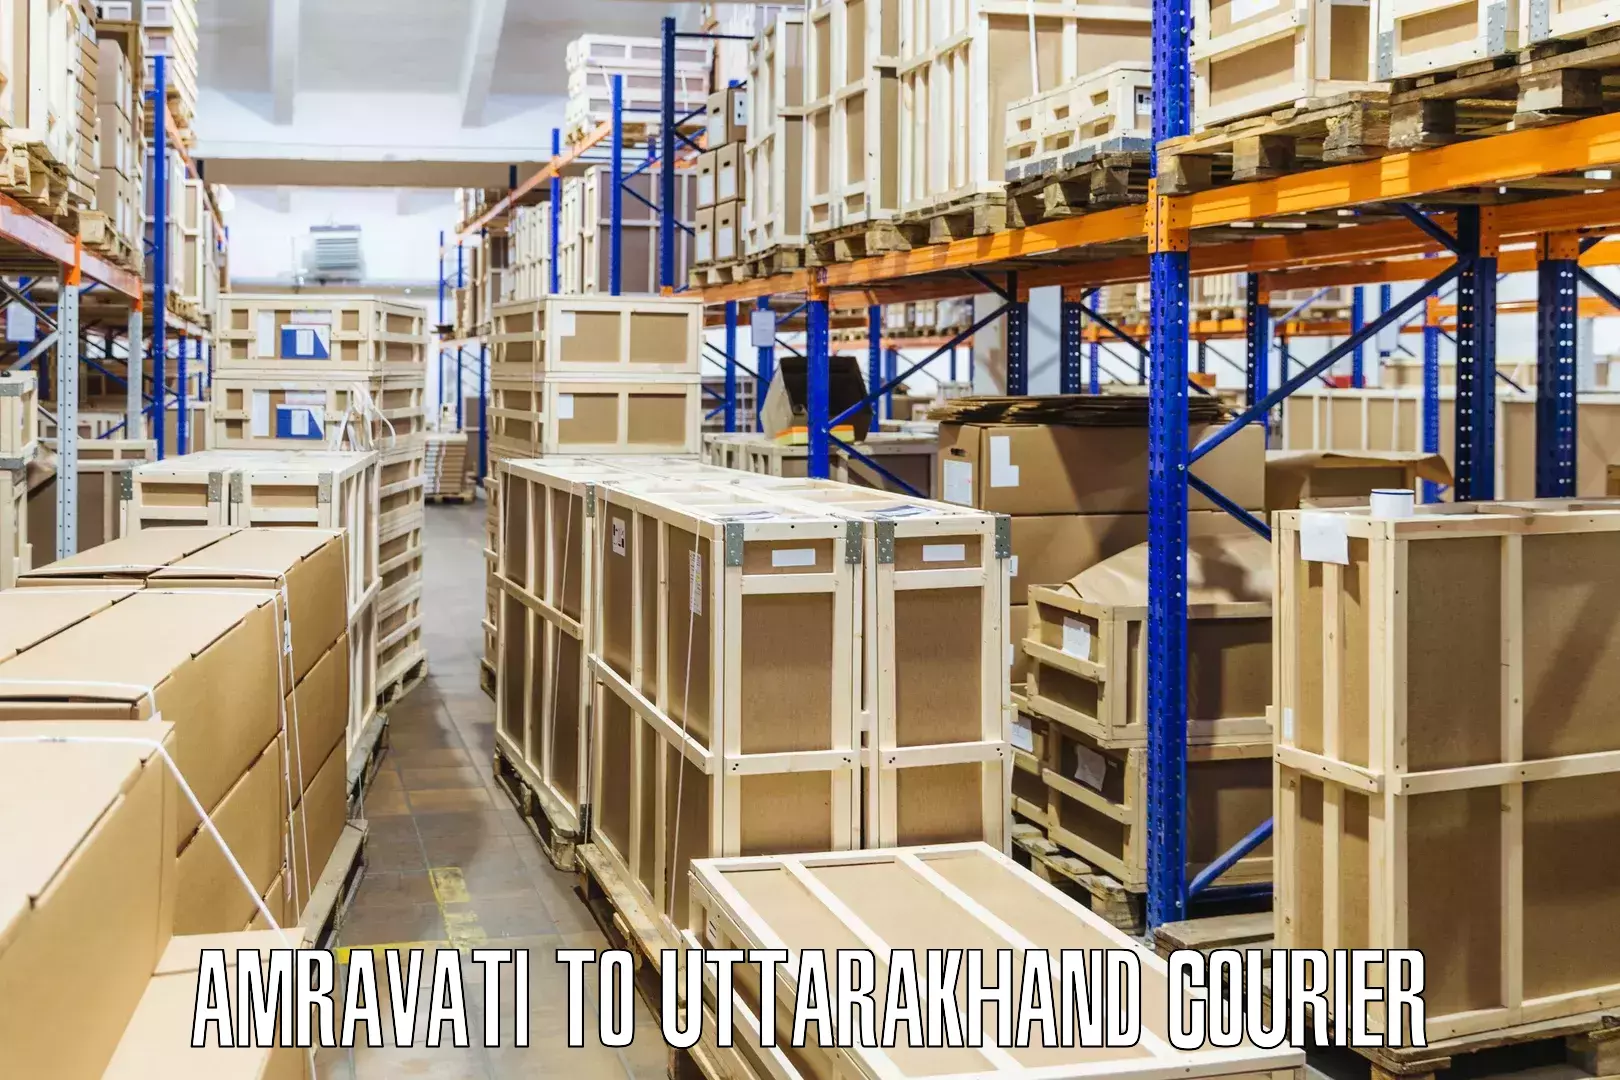 Courier service comparison Amravati to Almora